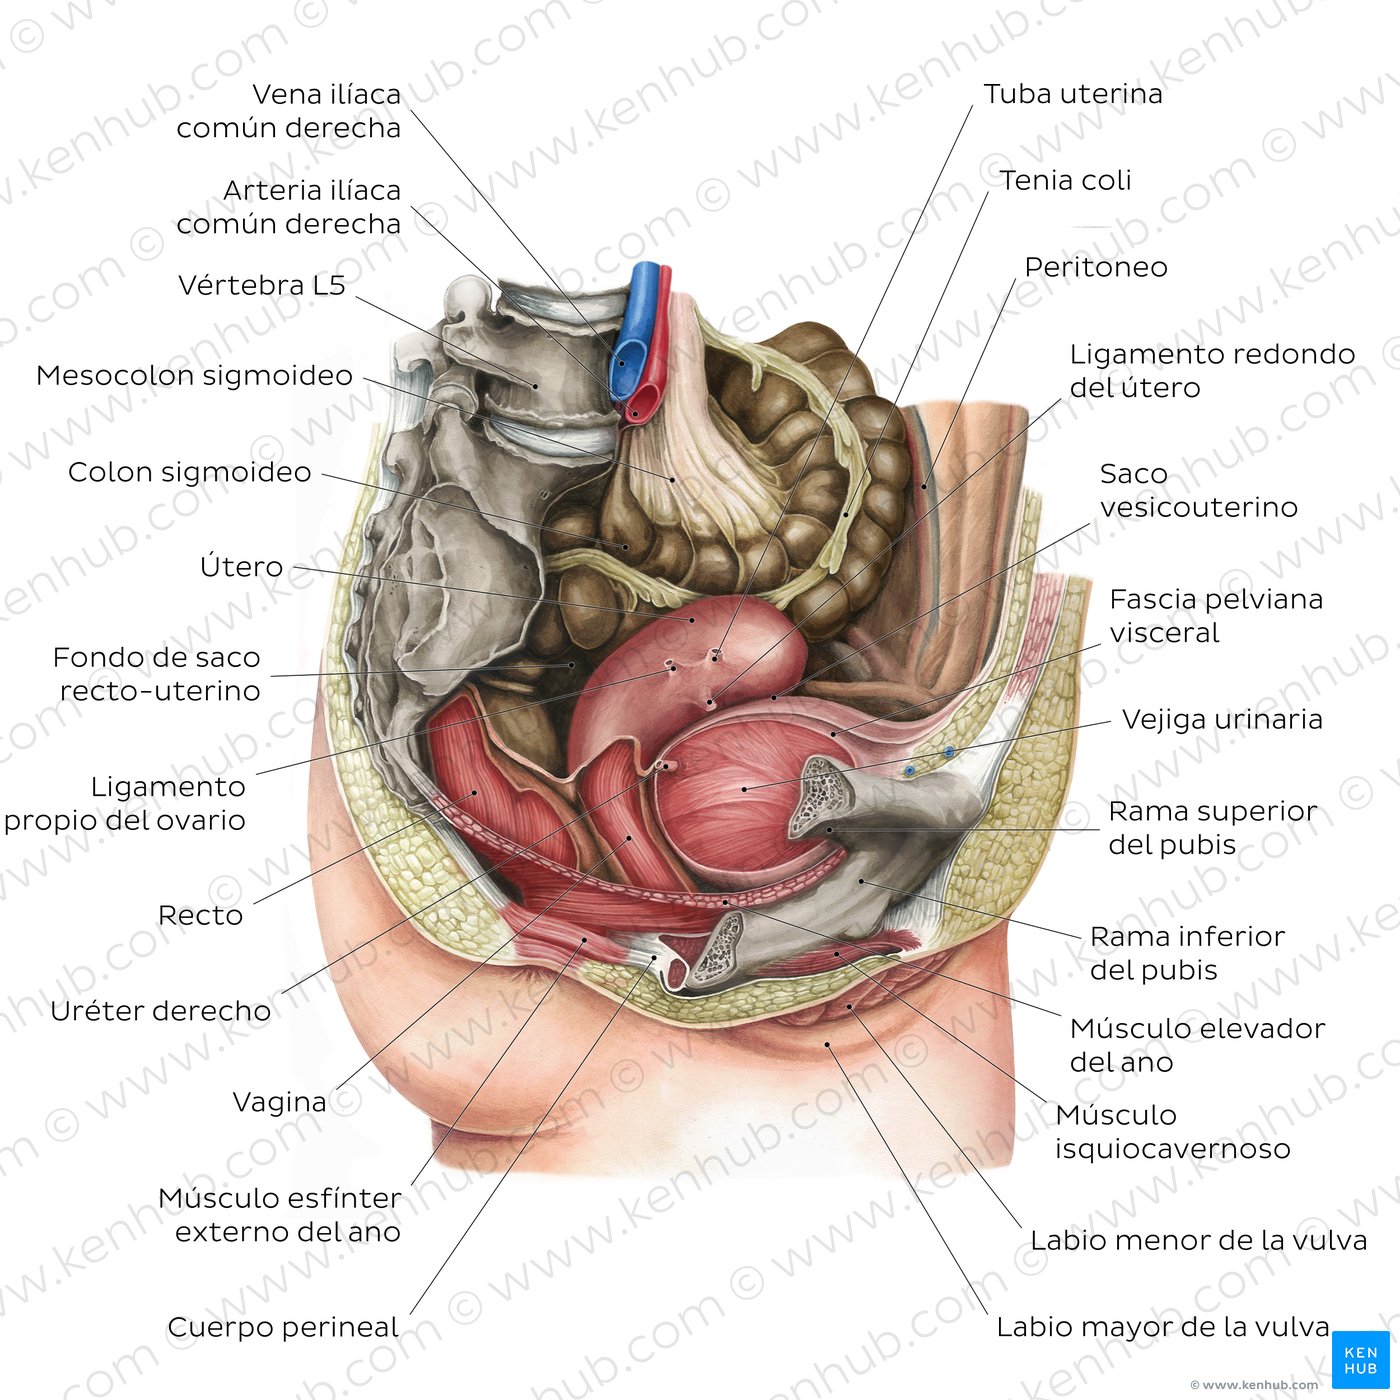 Órganos de la pelvis femenina y periné